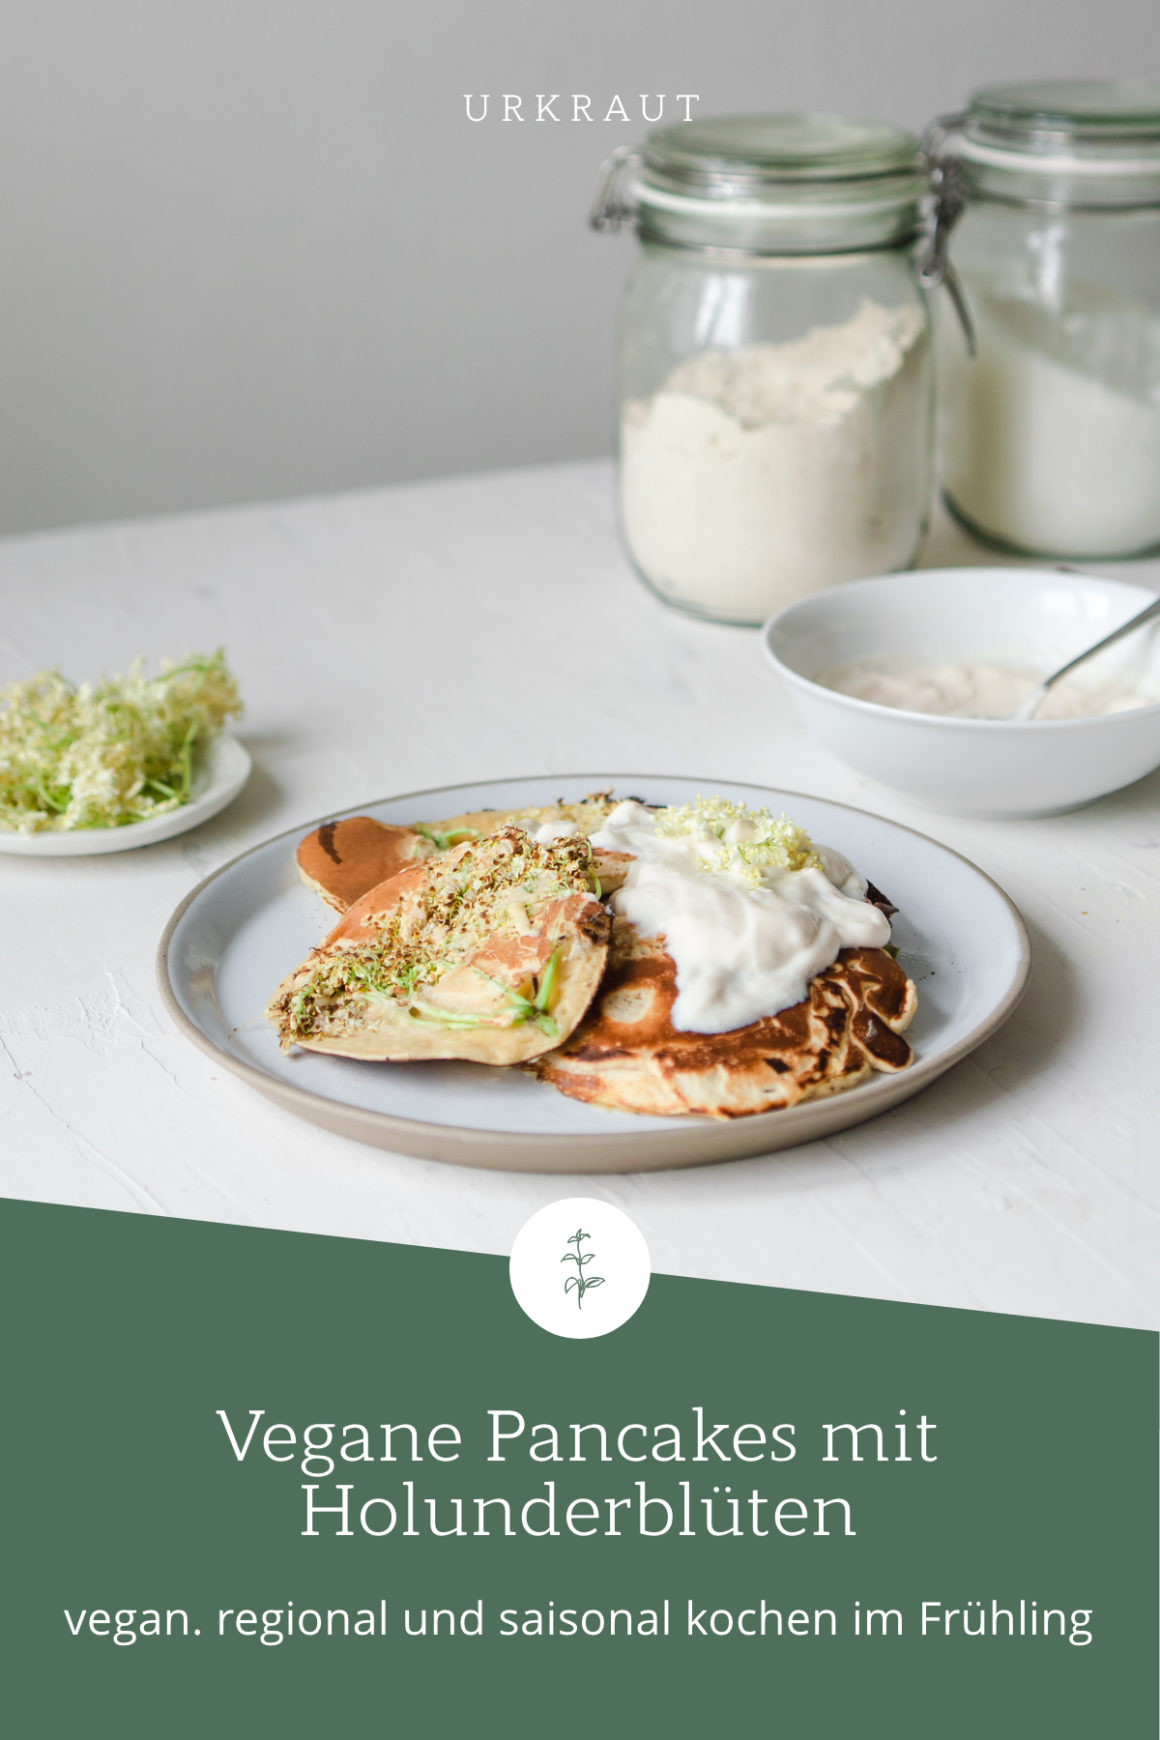 
Vegane Pancakes mit Holunderblüten
